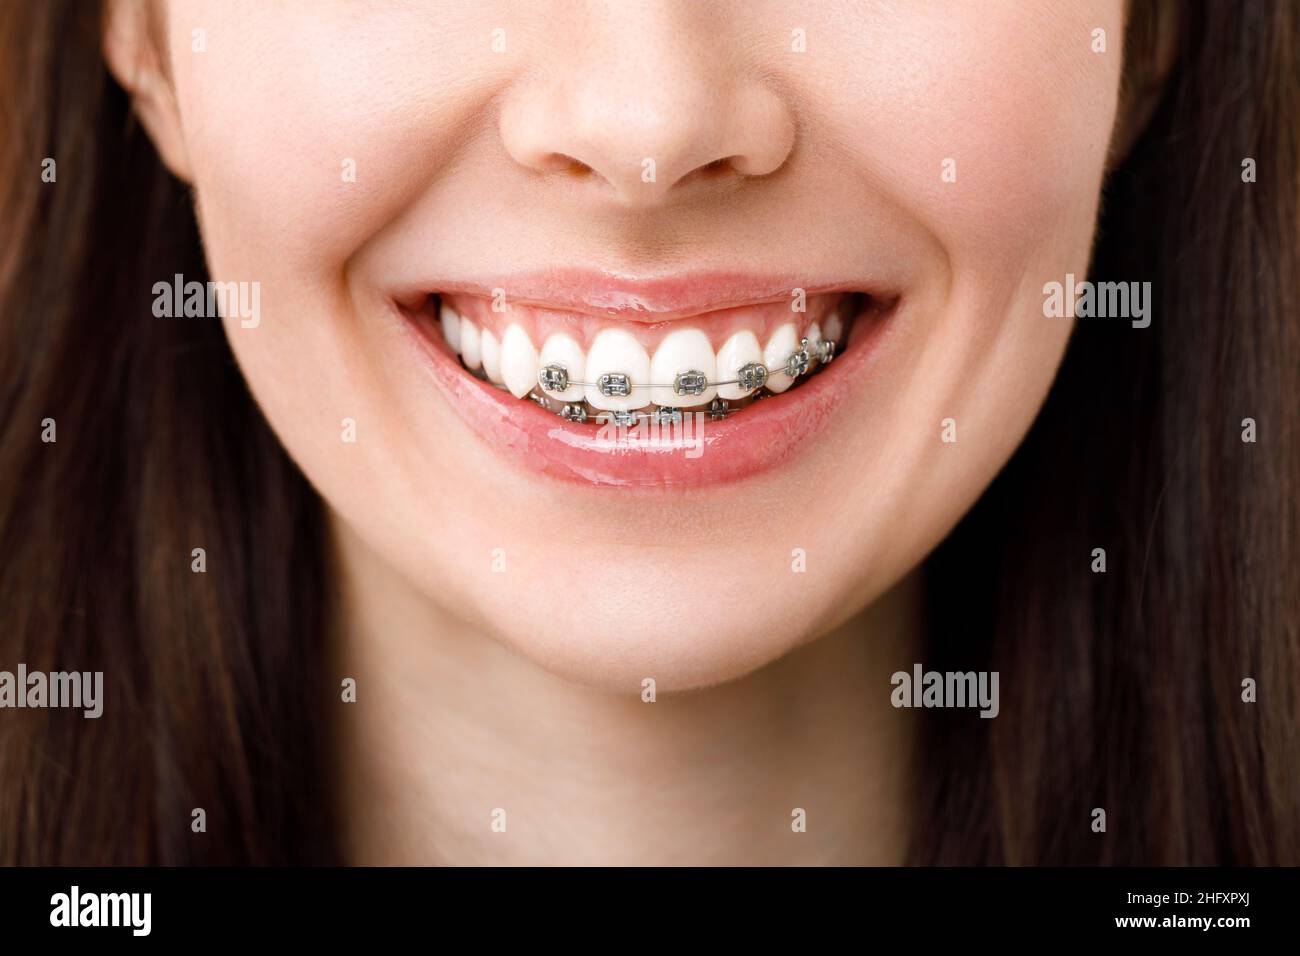 Traitement orthodontique. Concept de soins dentaires. Belle femme sourire en santé de près. Les supports en métal et céramique Gros plan sur les dents. Belle femme Smil Banque D'Images